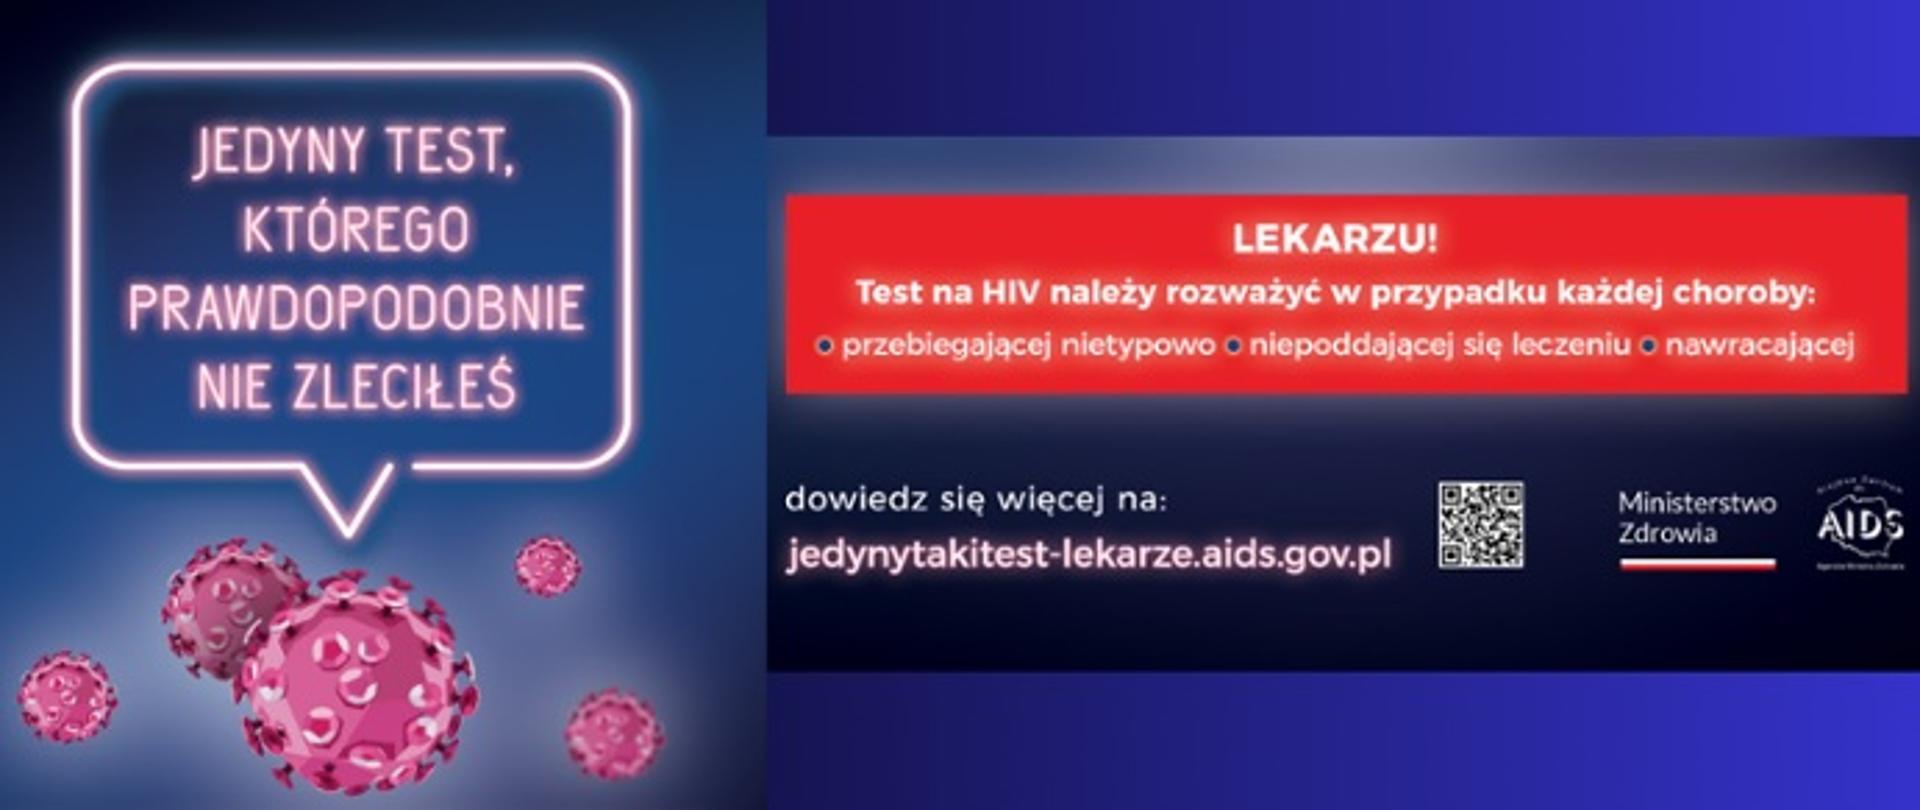 Grafika przedstawia napis "Jedyny taki test, którego nie zleciłeś" oraz obrazki wirusa HIV a także napis "Lekarzu! Test na HIV należy rozważyć w przypadku każdej choroby: przebiegającej nietypowo, niepoddającej się leczeniu, nawracającej"